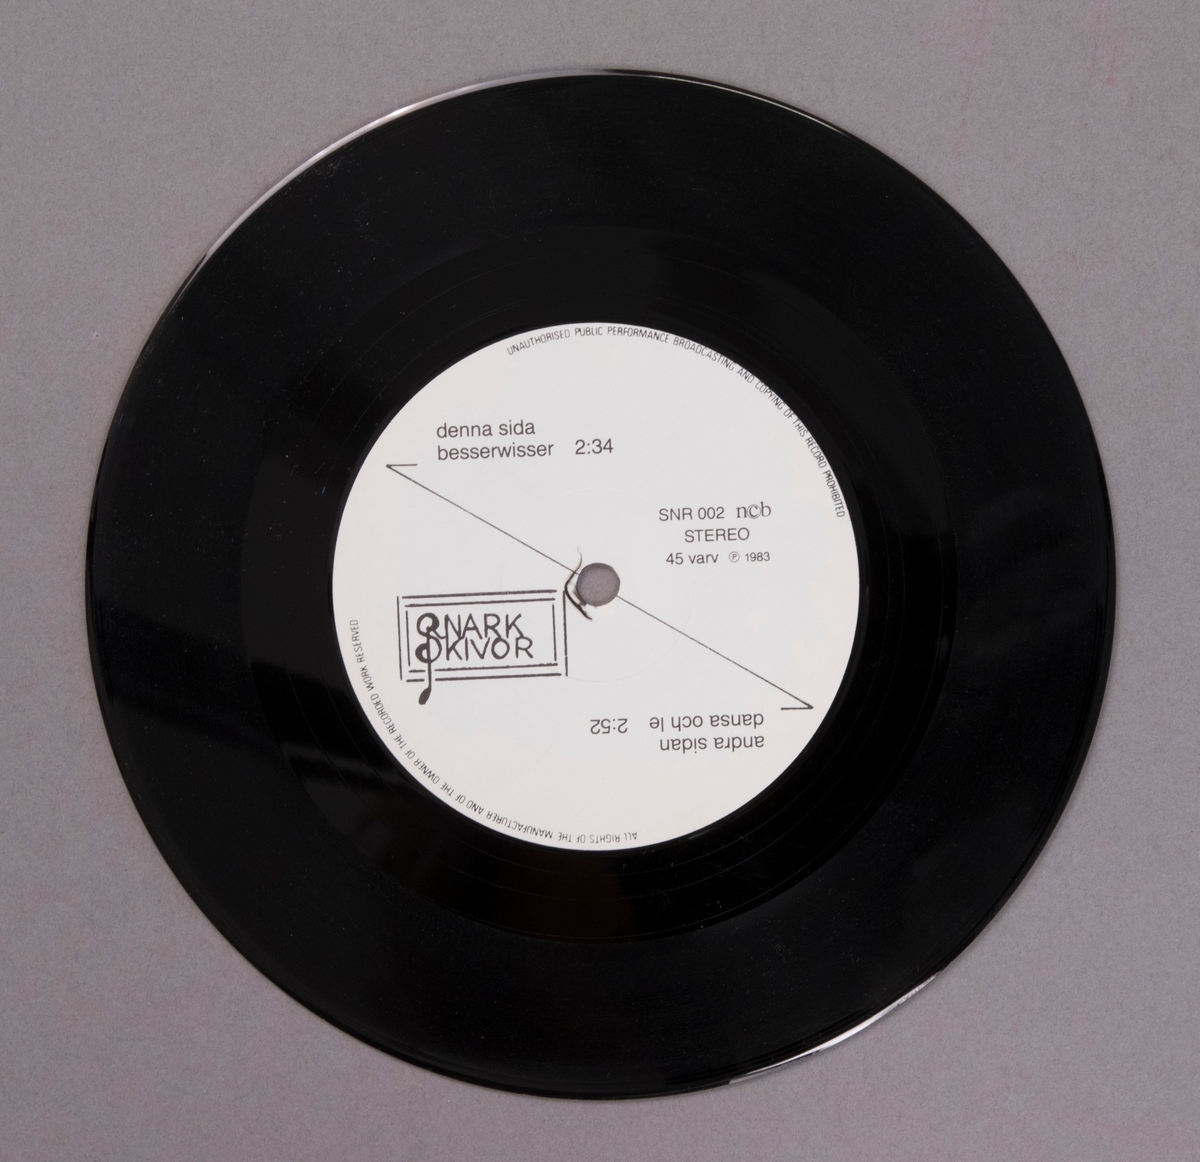 Singel-skiva av svart vinyl med vit pappersetikett, i omslag av papper, i plastficka. Inne i skivomslaget finns ett löst pappersark med fyra tecknade porträtt och produktionsuppgifter.

Innehåll:
Besserwisser
Dansa och le

JM 55199:1, Skiva
JM 55199:2, Omslag
JM 55199:3, Pappersark